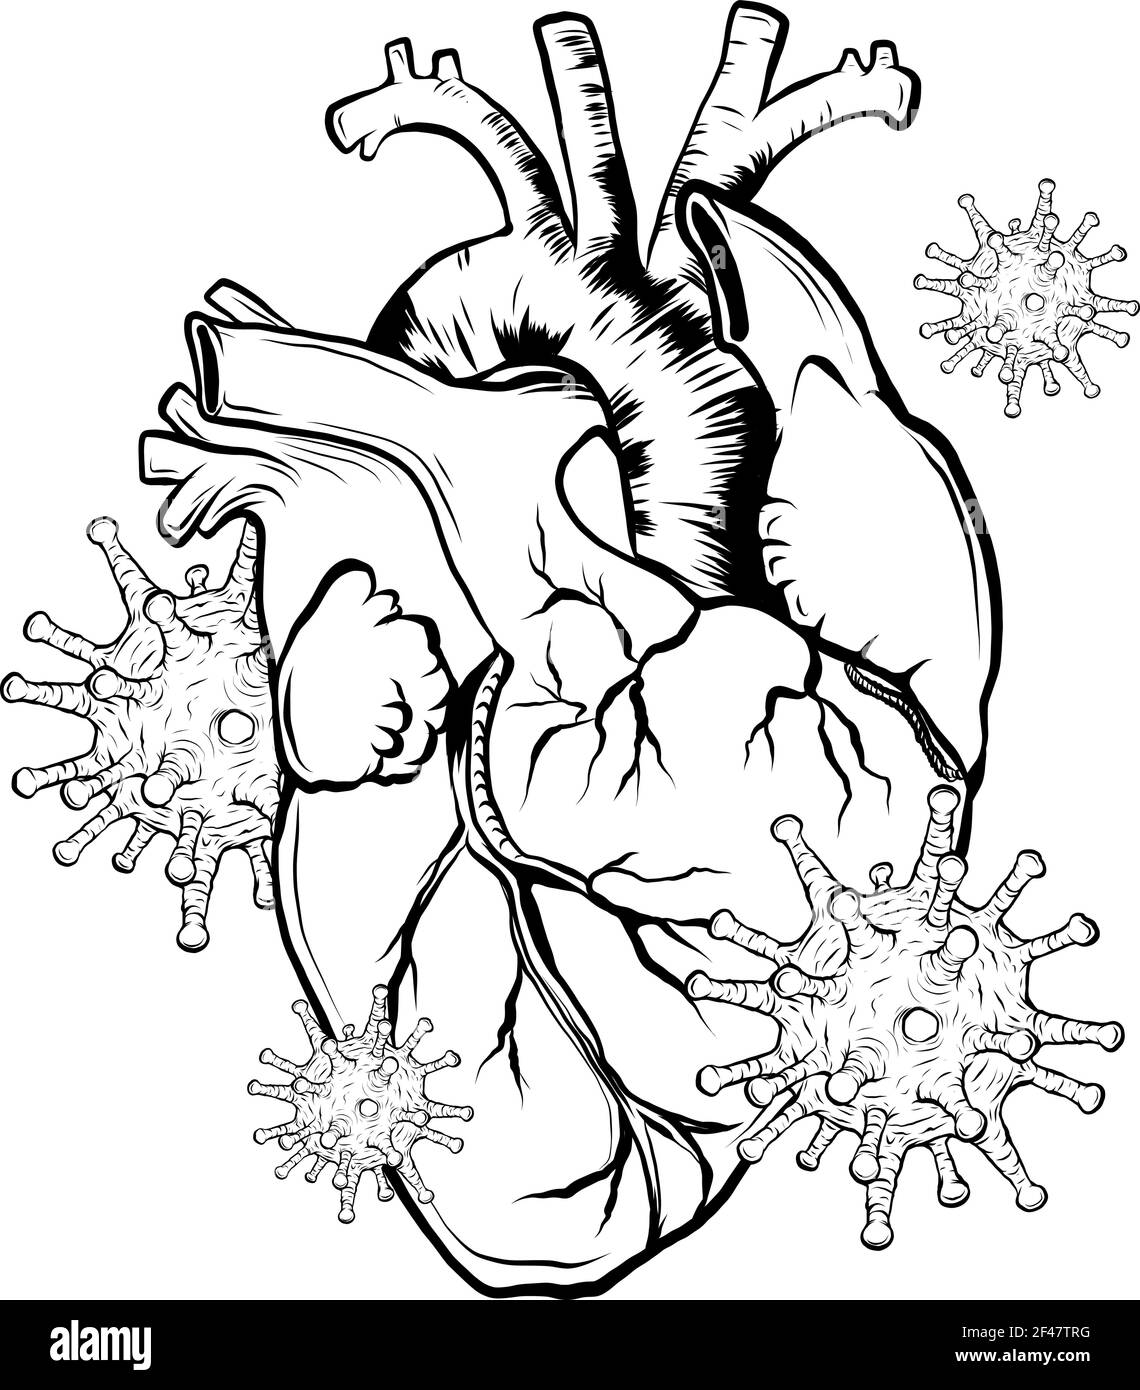 disegnare in bianco e nero di virus infettare un essere umano illustrazione del vettore cardiaco Illustrazione Vettoriale